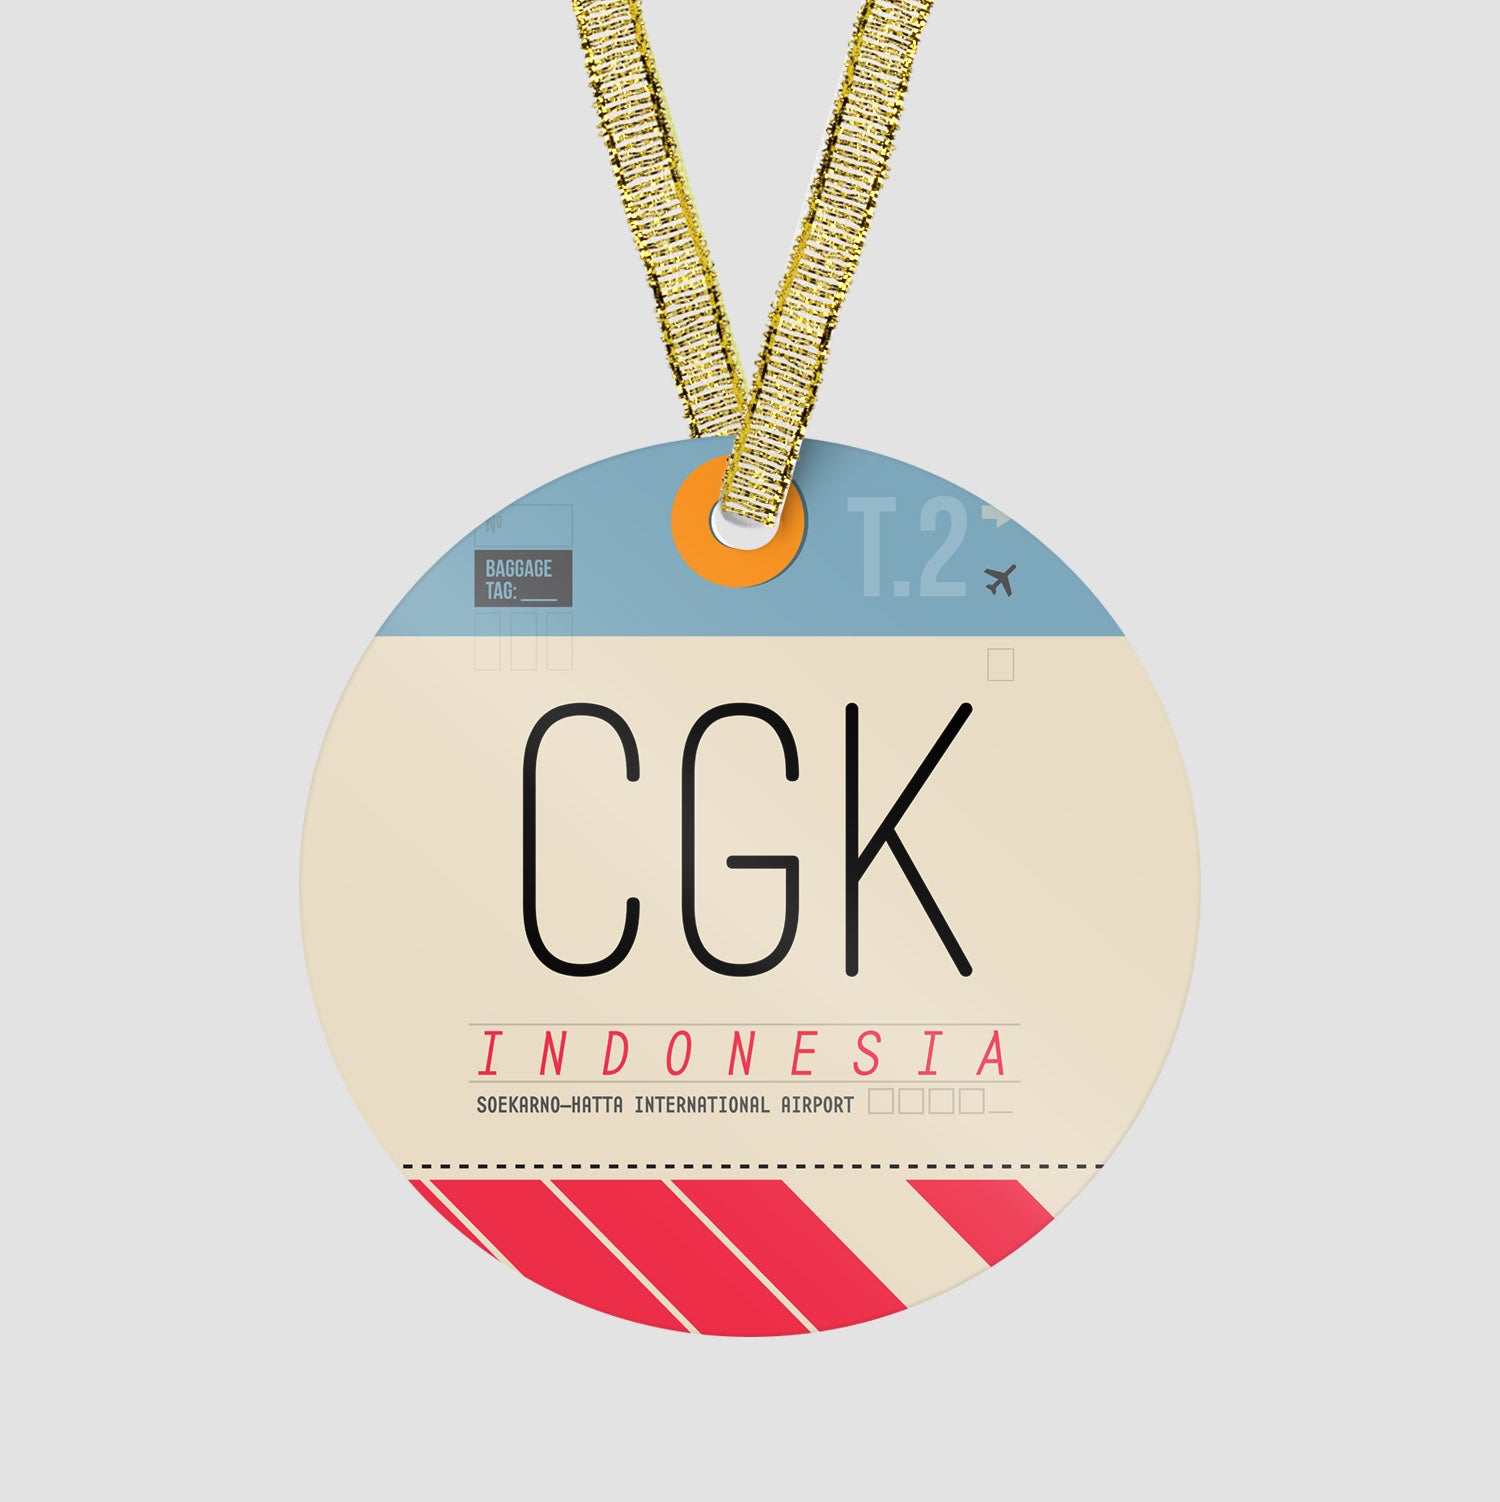 CGK - Ornament - Airportag